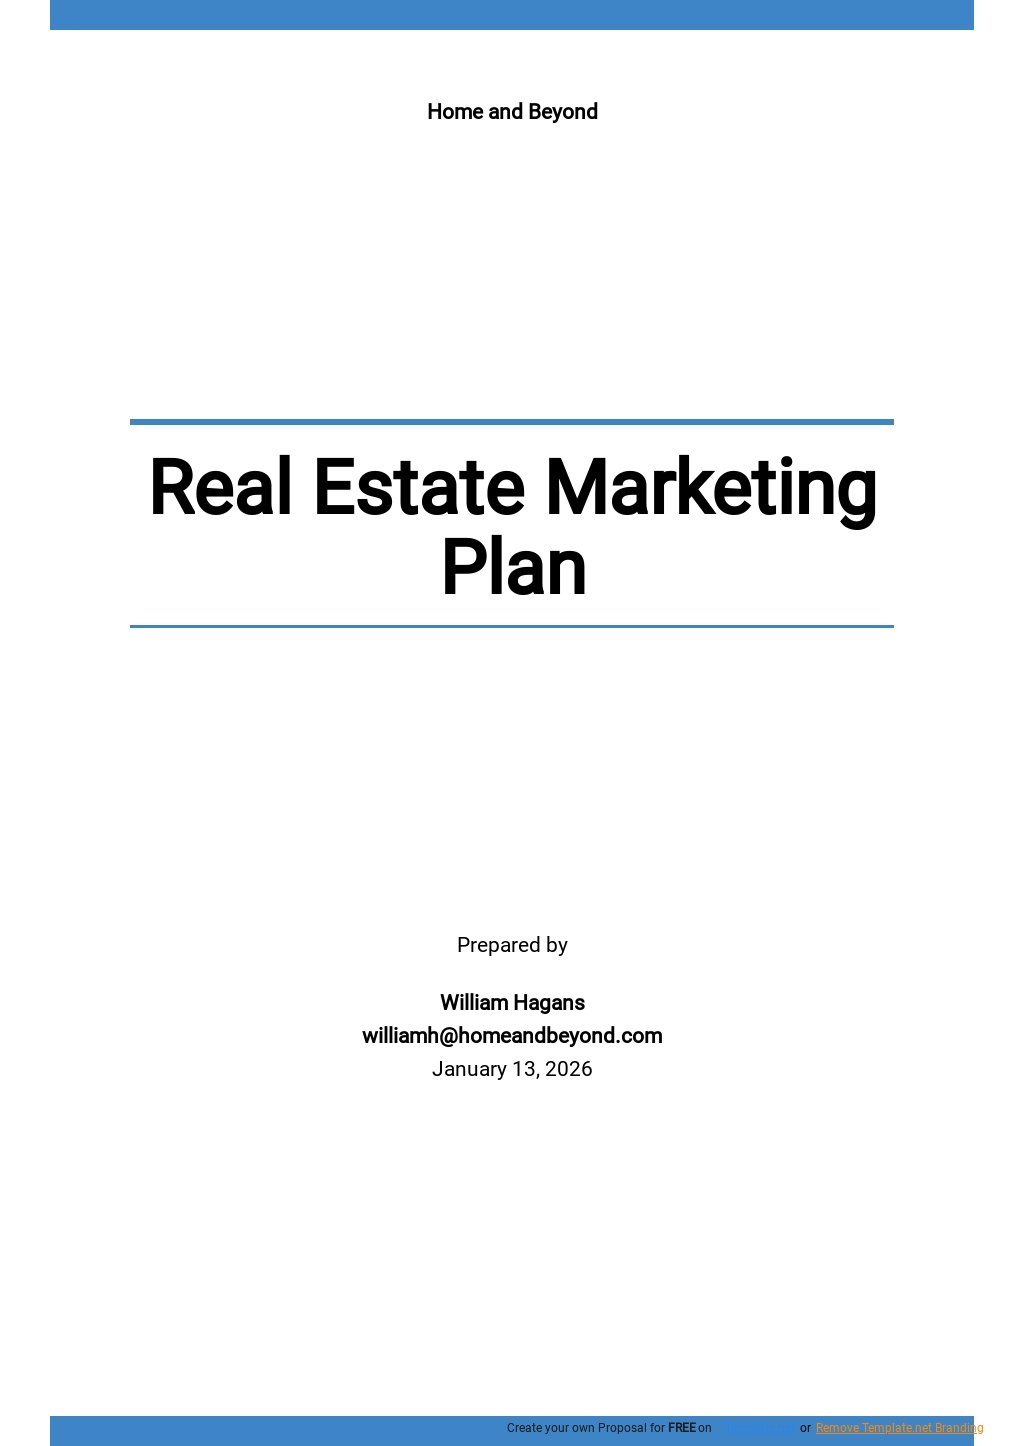 Free Sample Real Estate Marketing Plan Template